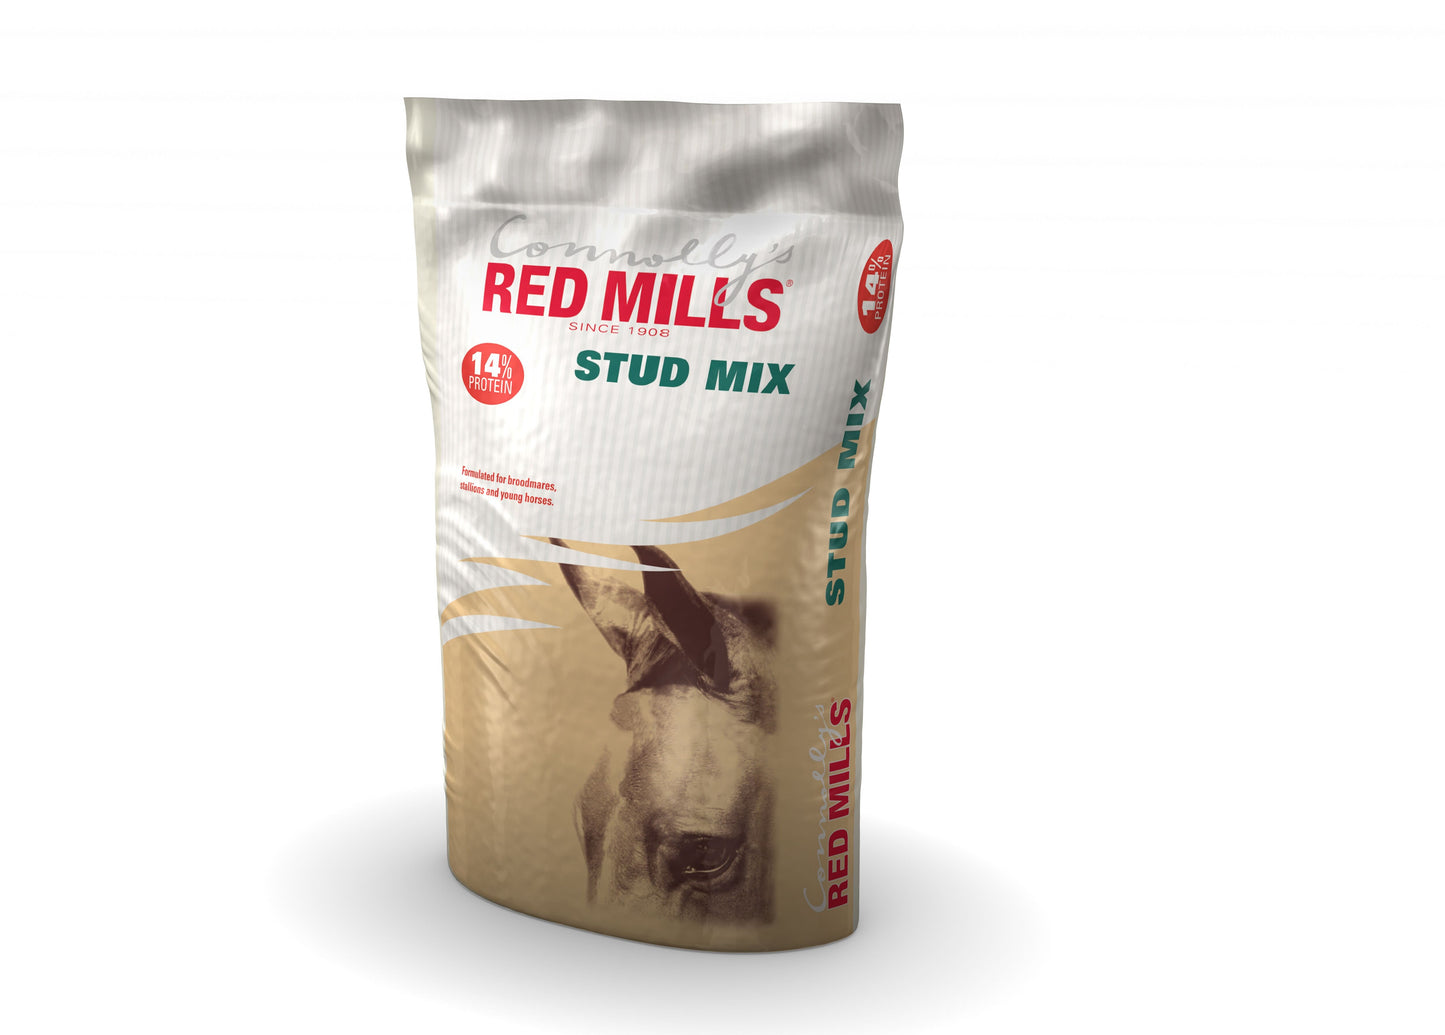 Red Mills Stud Mix 14%